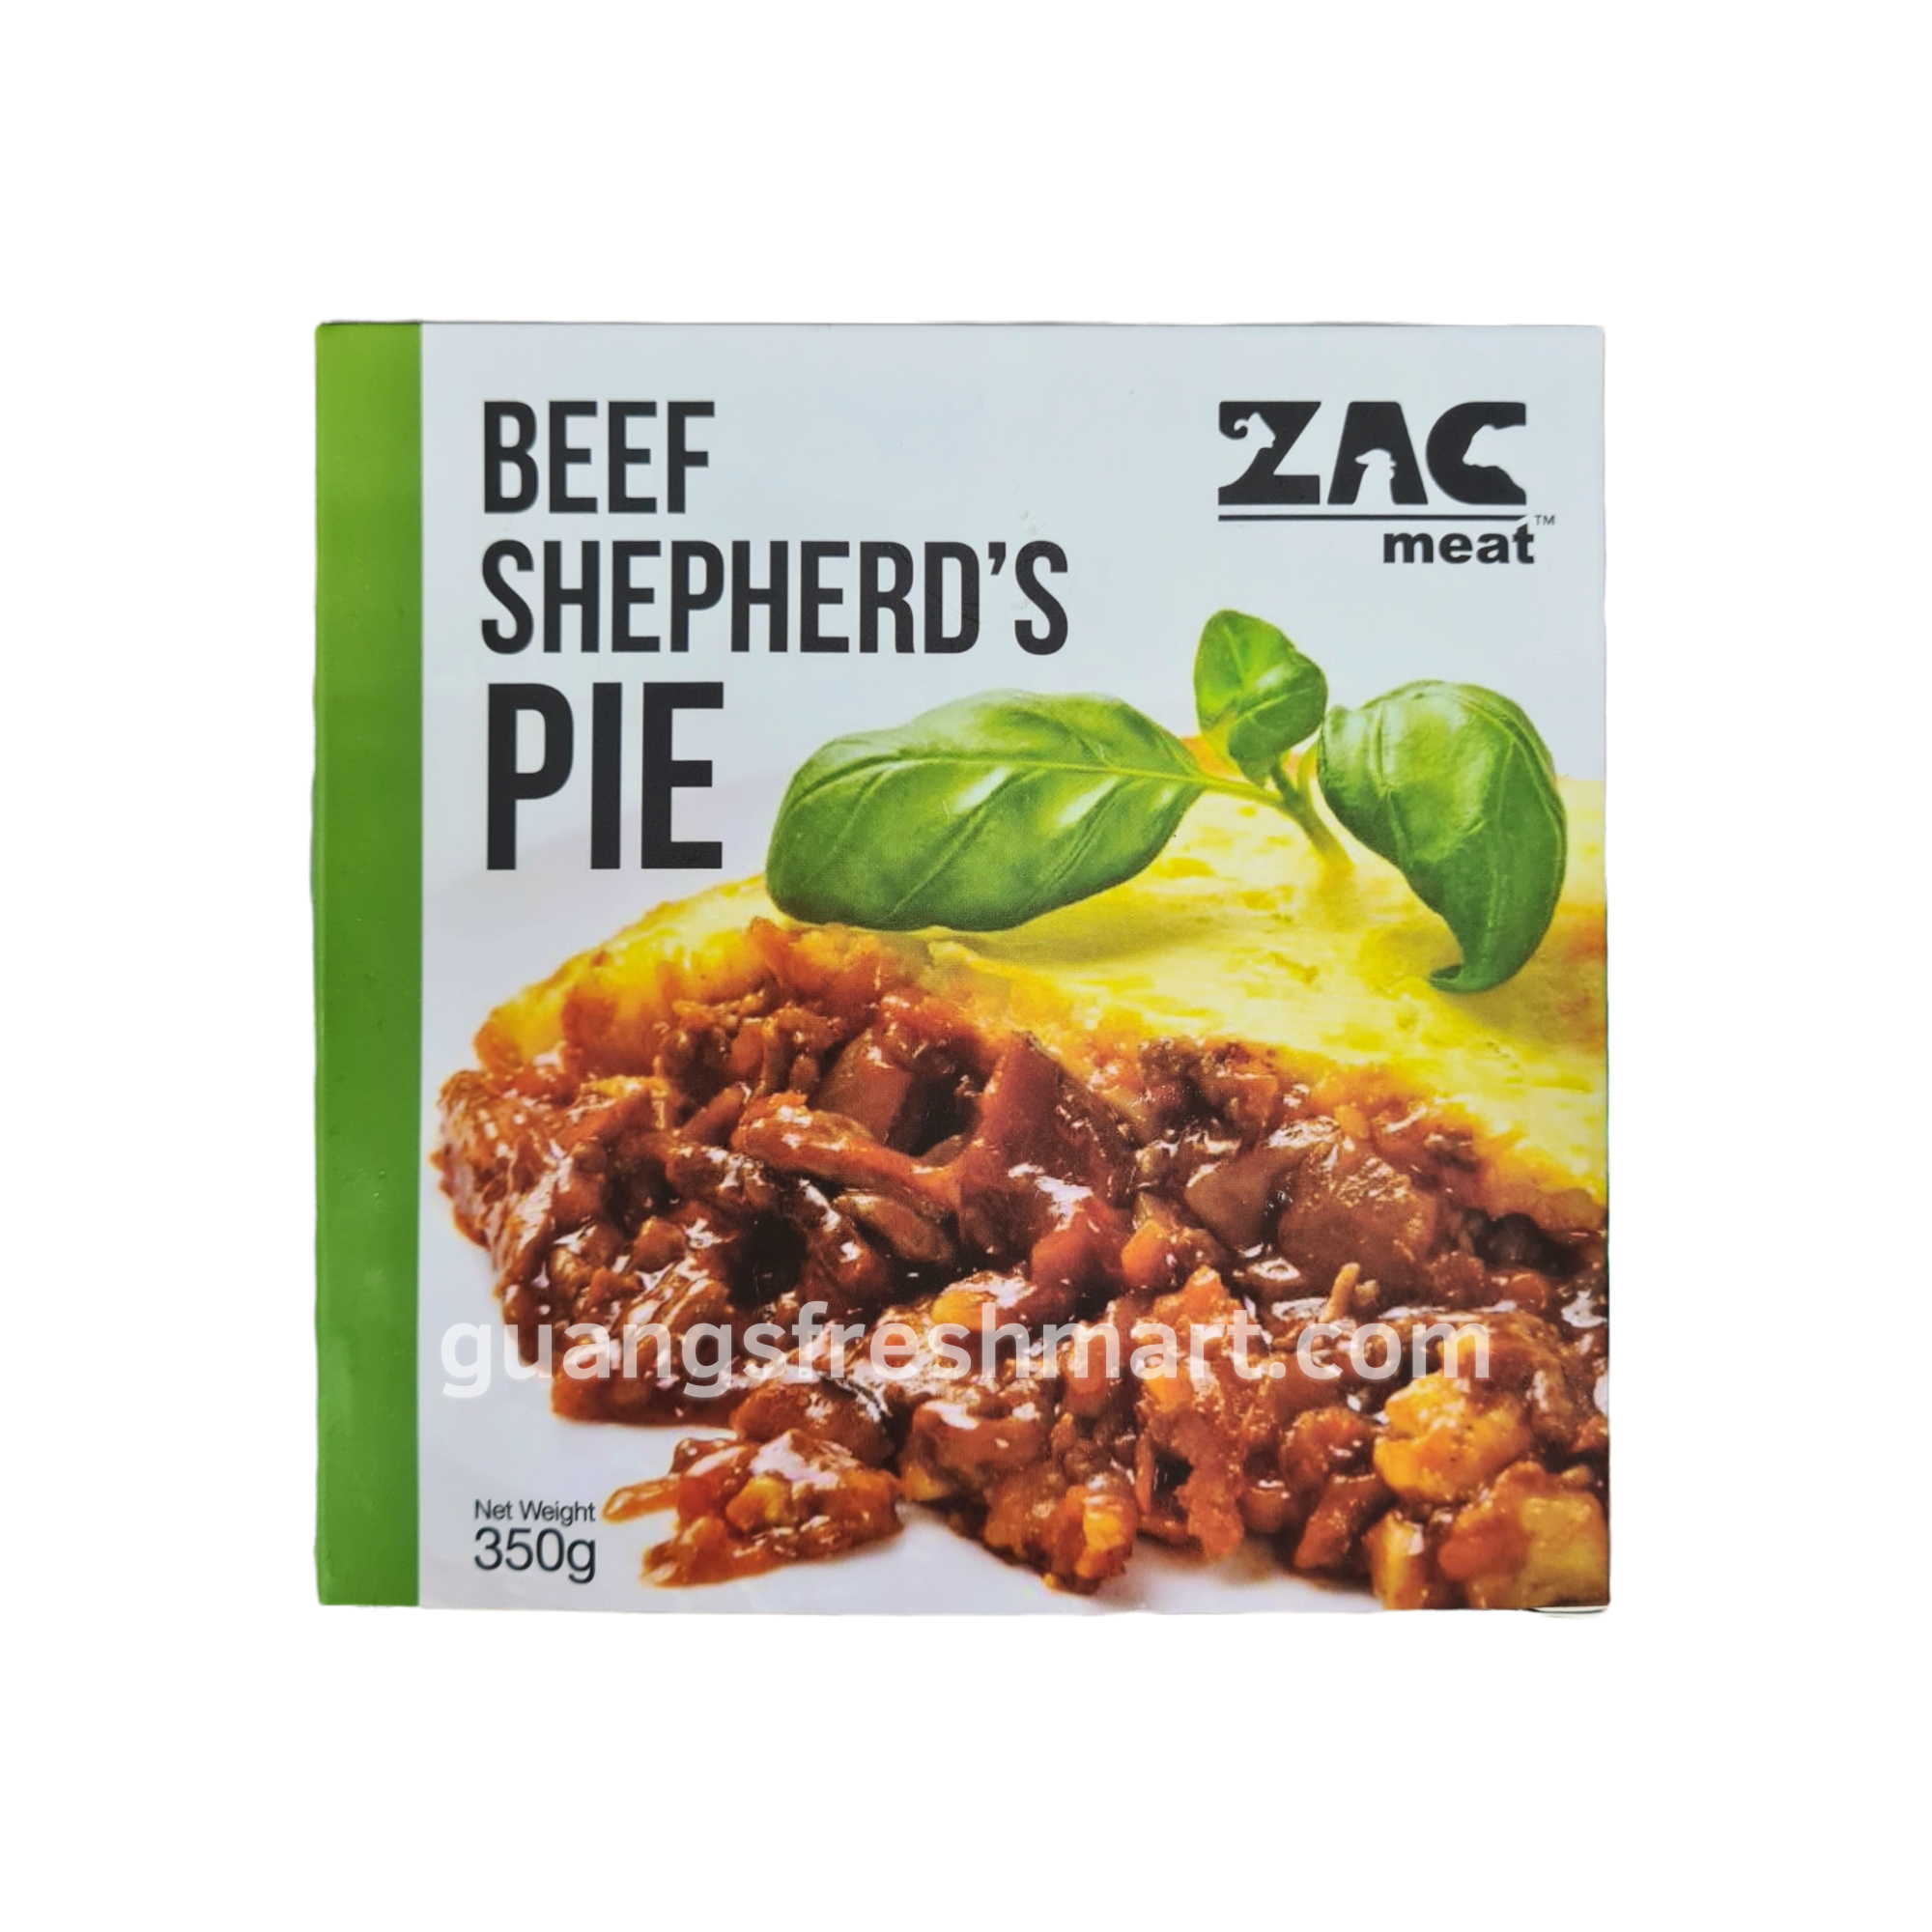 ZAC Beef Shepherd's Pie (350g)